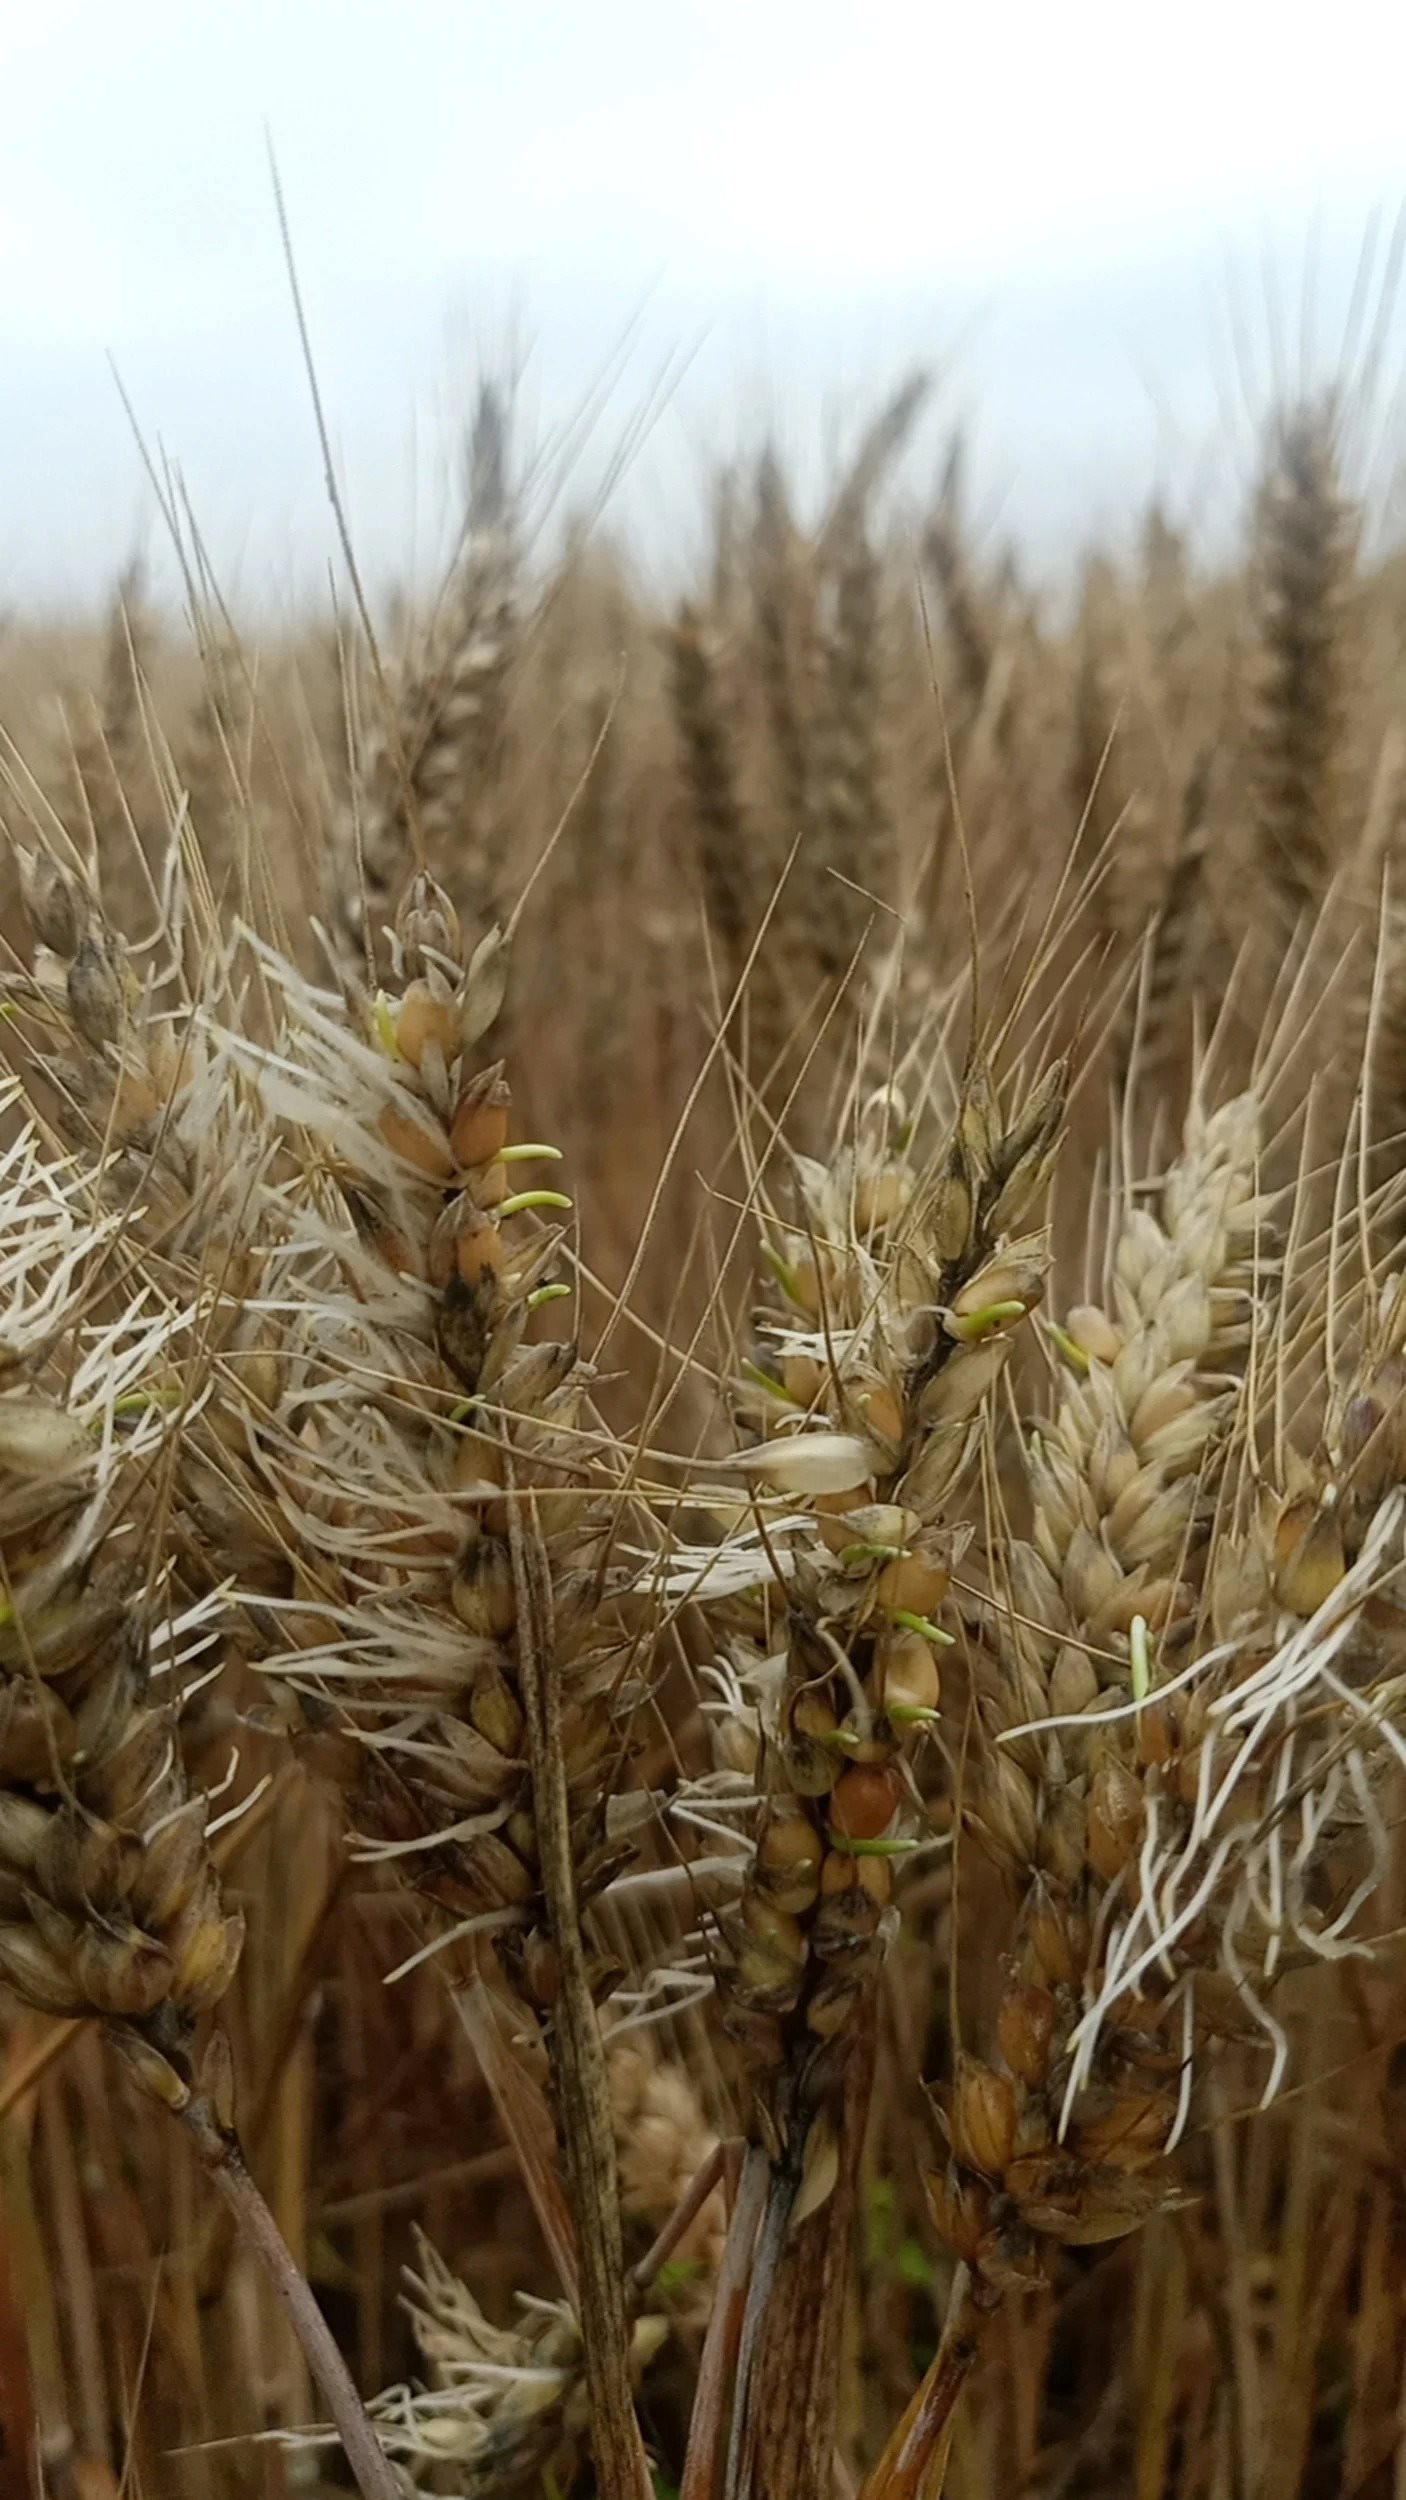 Quốc gia sản xuất lớn nhất mất hàng triệu tấn lúa mì ngay trước thu hoạch, giá toàn cầu có nguy cơ bị ảnh hưởng - Ảnh 2.